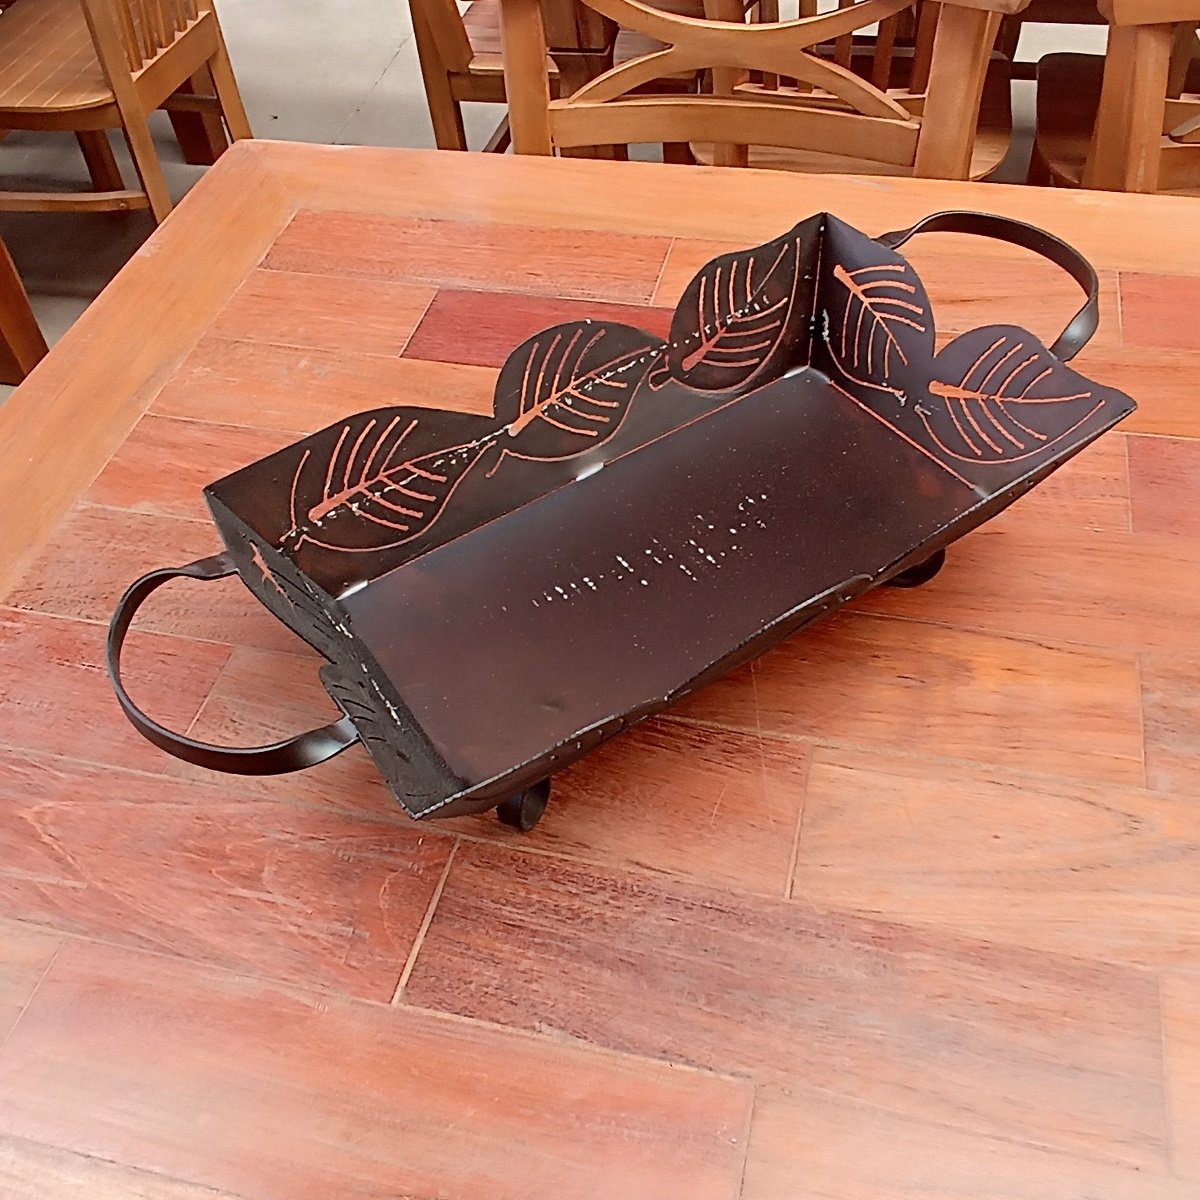 Bandeja de ferro para mesas e bancadas super resistente artesanato rústico para decoração e utilidad - 6